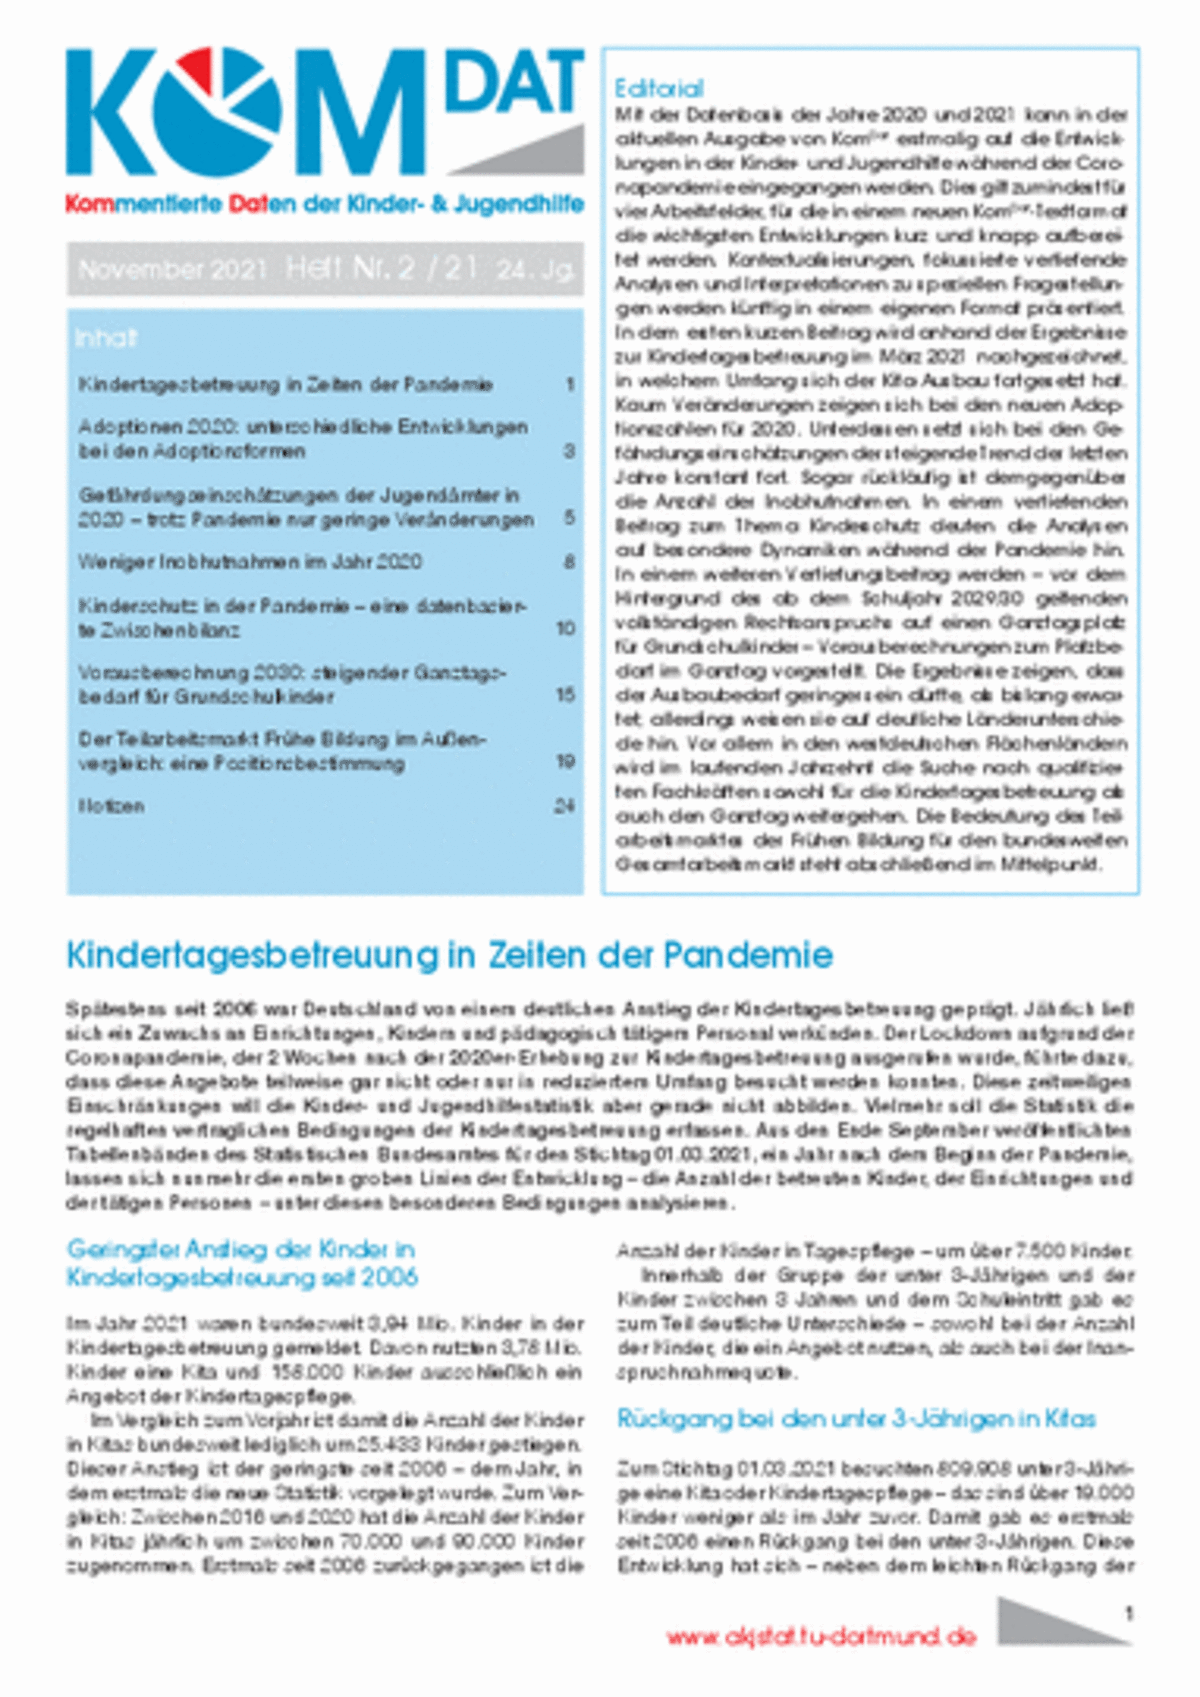 Cover der KomDat 2/21 mit Inhaltsverzeichnis, blauen Überschriften und schwarzem Text